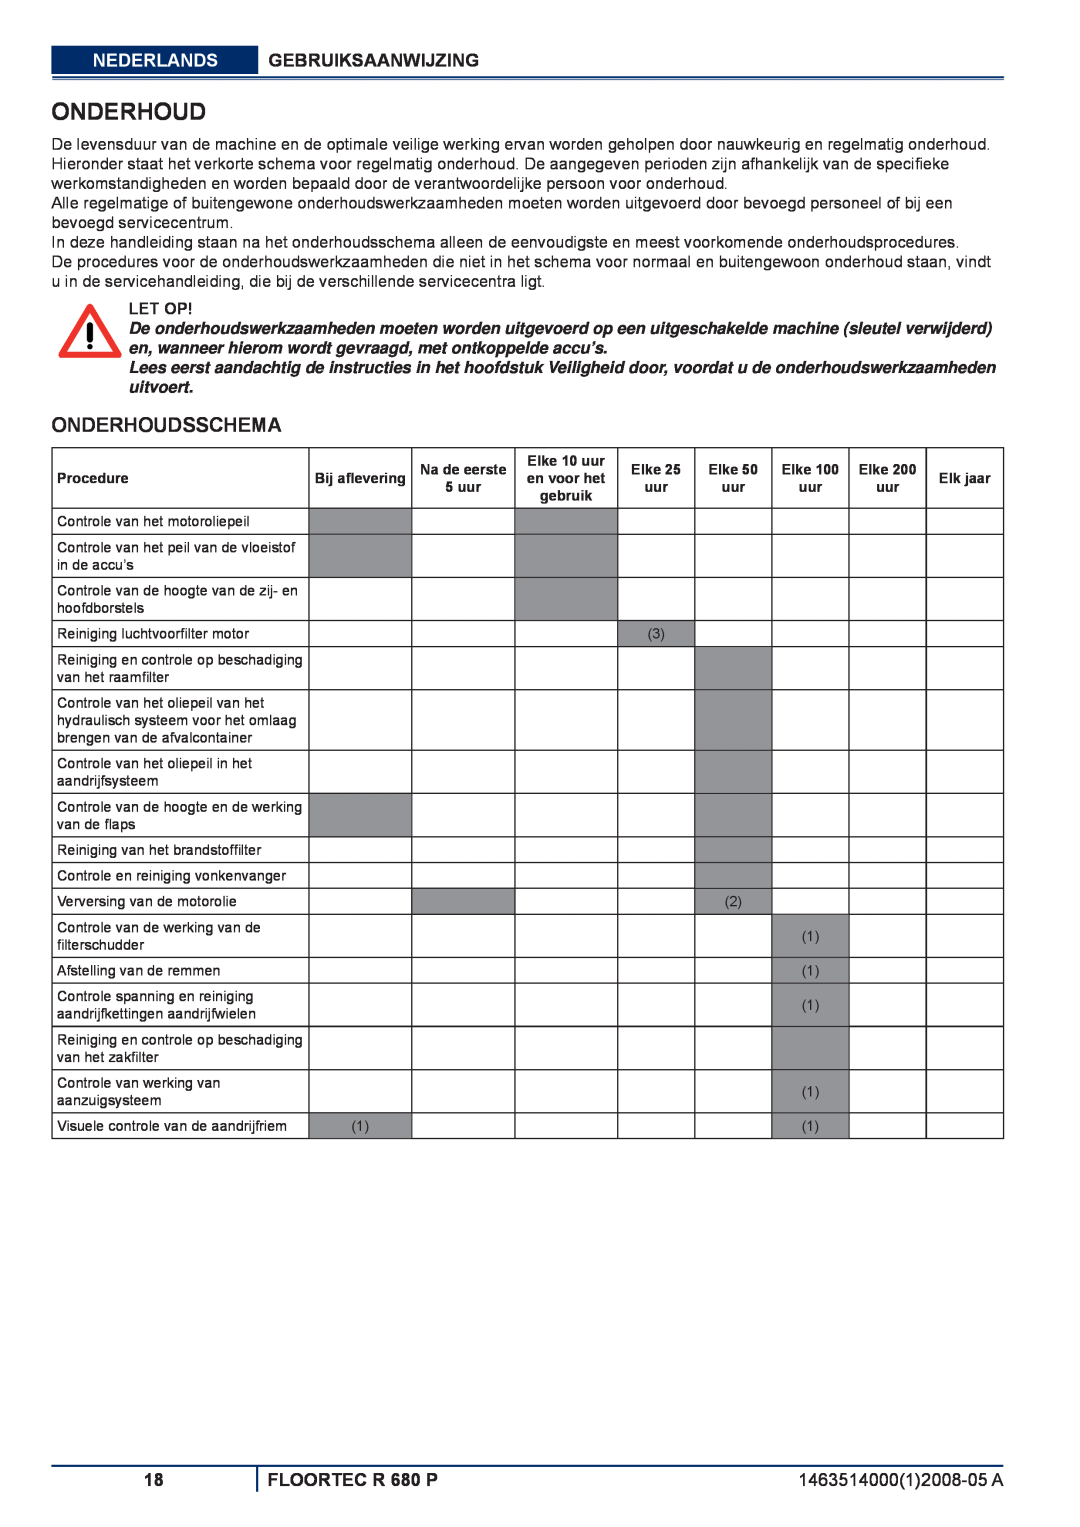 Nilfisk-ALTO manuel dutilisation Onderhoudsschema, Nederlands Gebruiksaanwijzing, FLOORTEC R 680 P, Let Op 